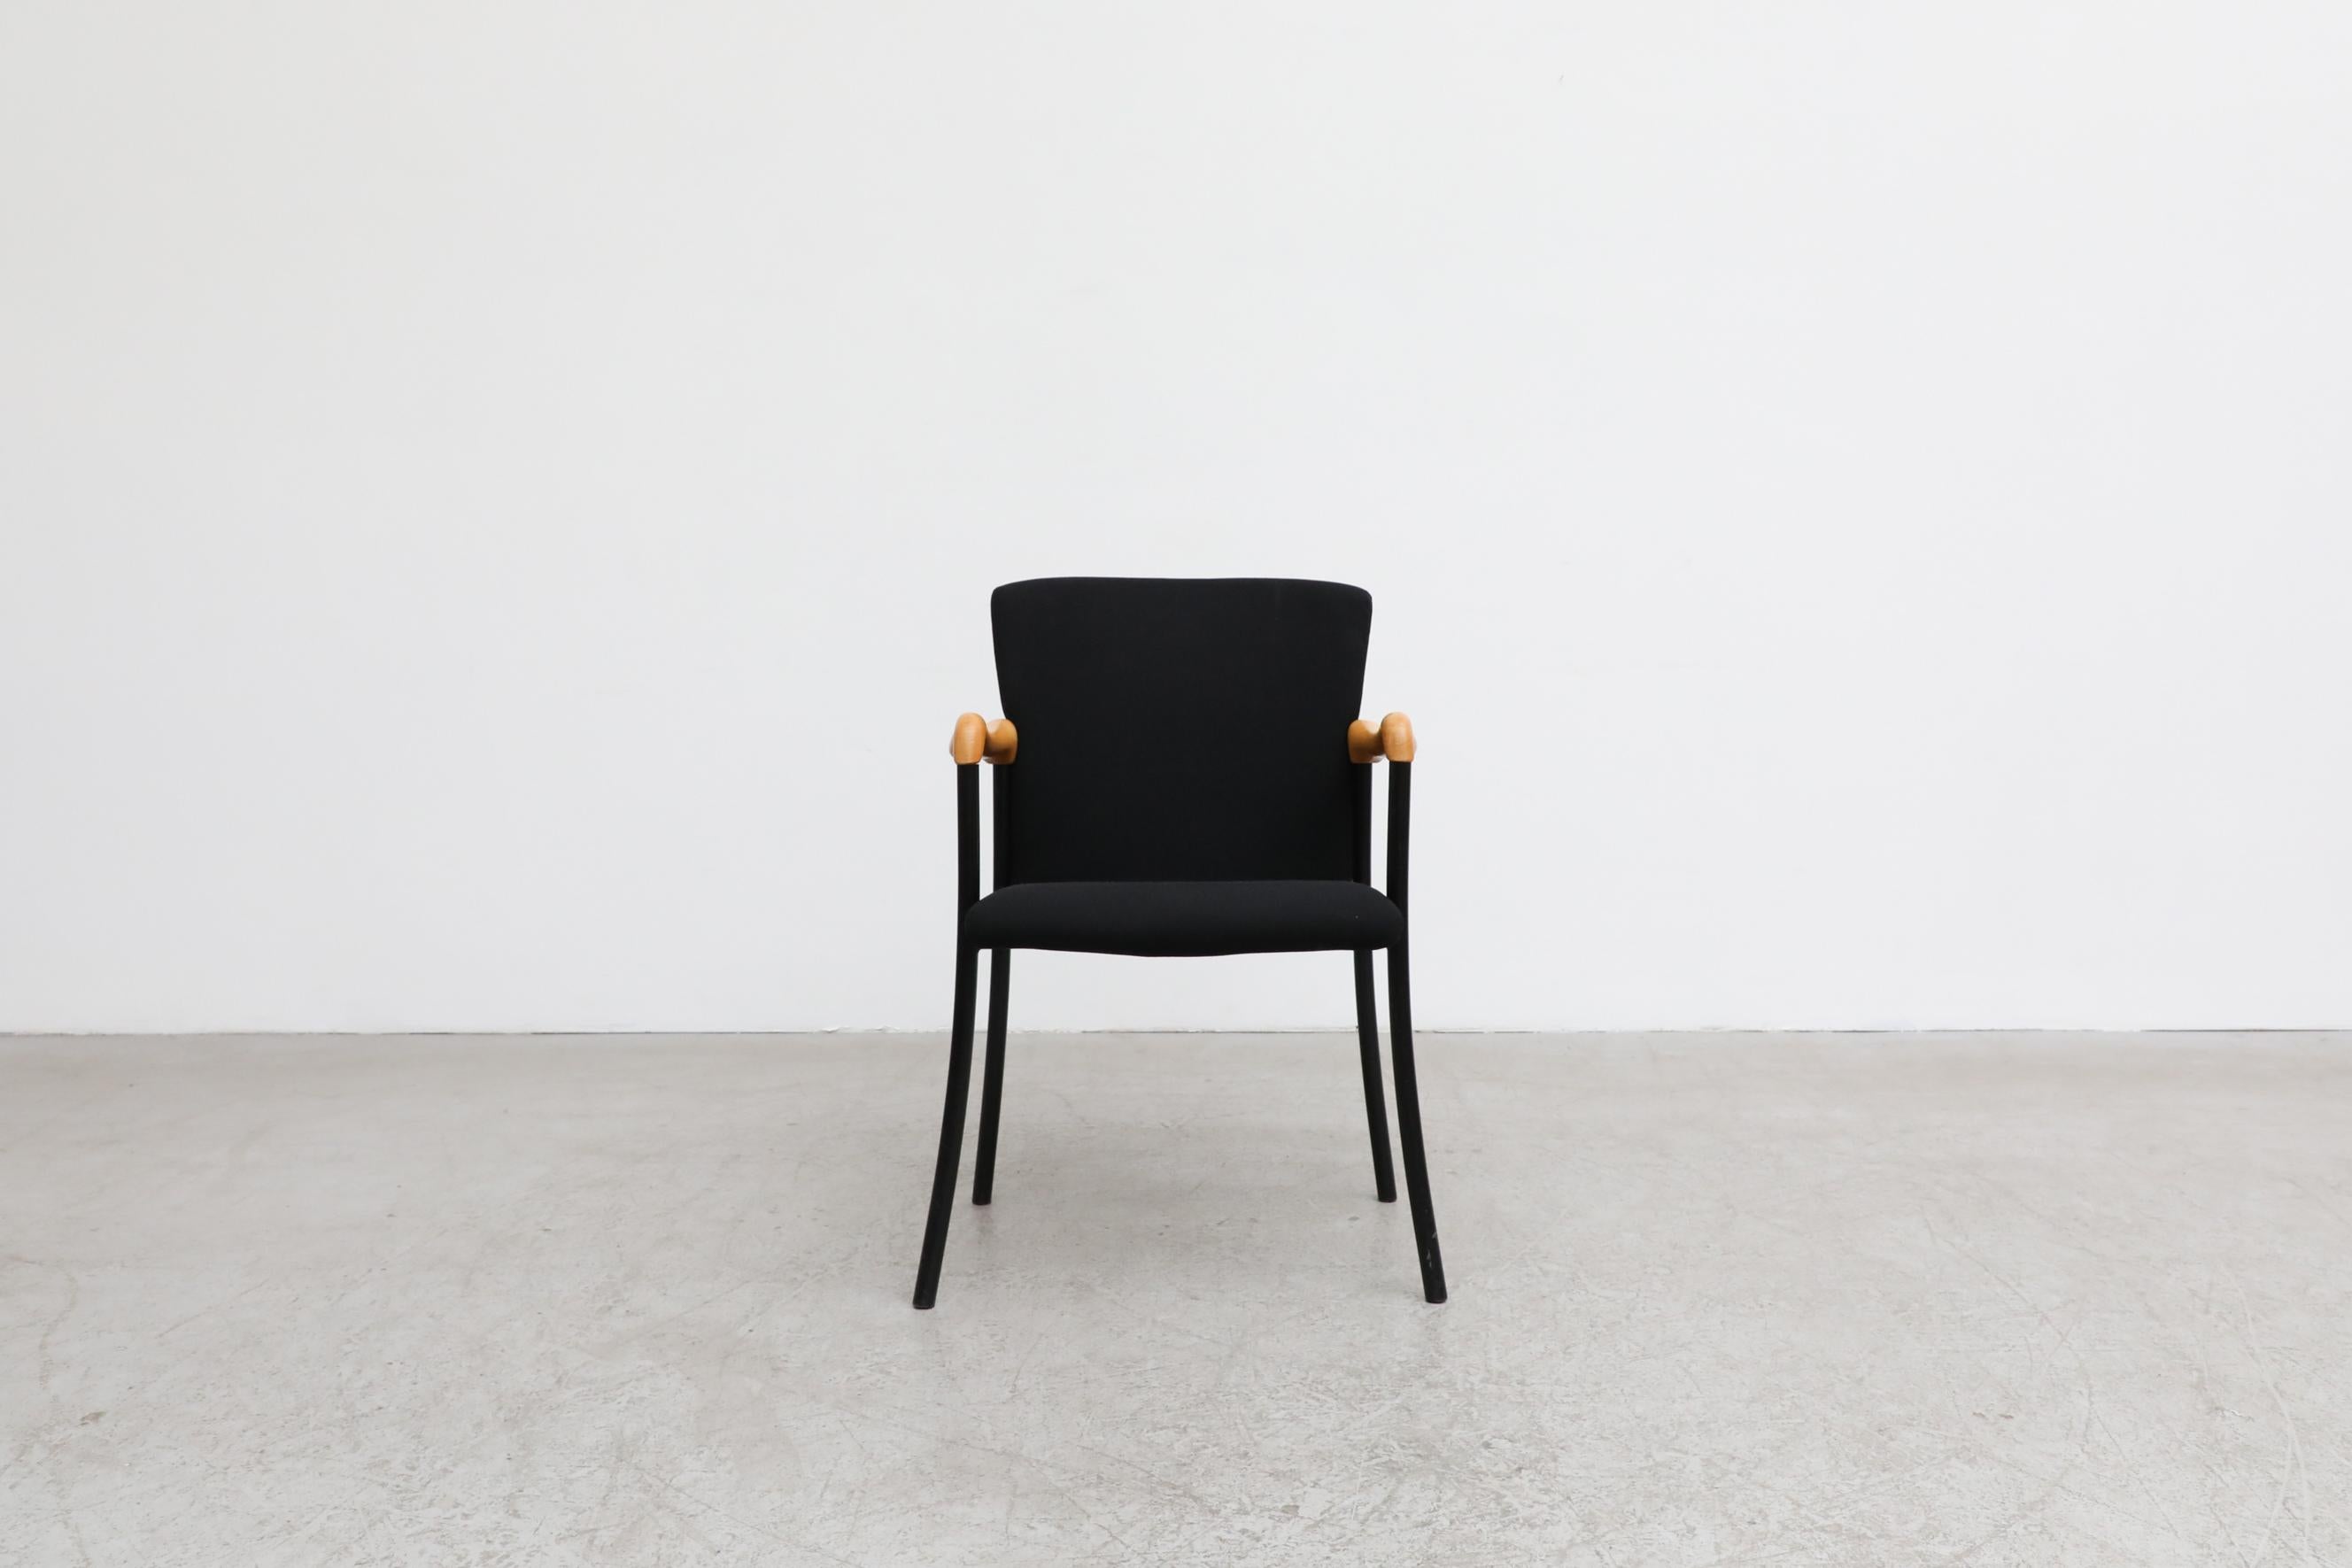 Ces fauteuils originaux Beta Wassenaar de style Philippe Starck sont dotés d'accoudoirs en bois de forme organique. Les assises et le dossier sont tapissés d'un tissu souple noir et les piétements sont en métal émaillé. Presque tous en état